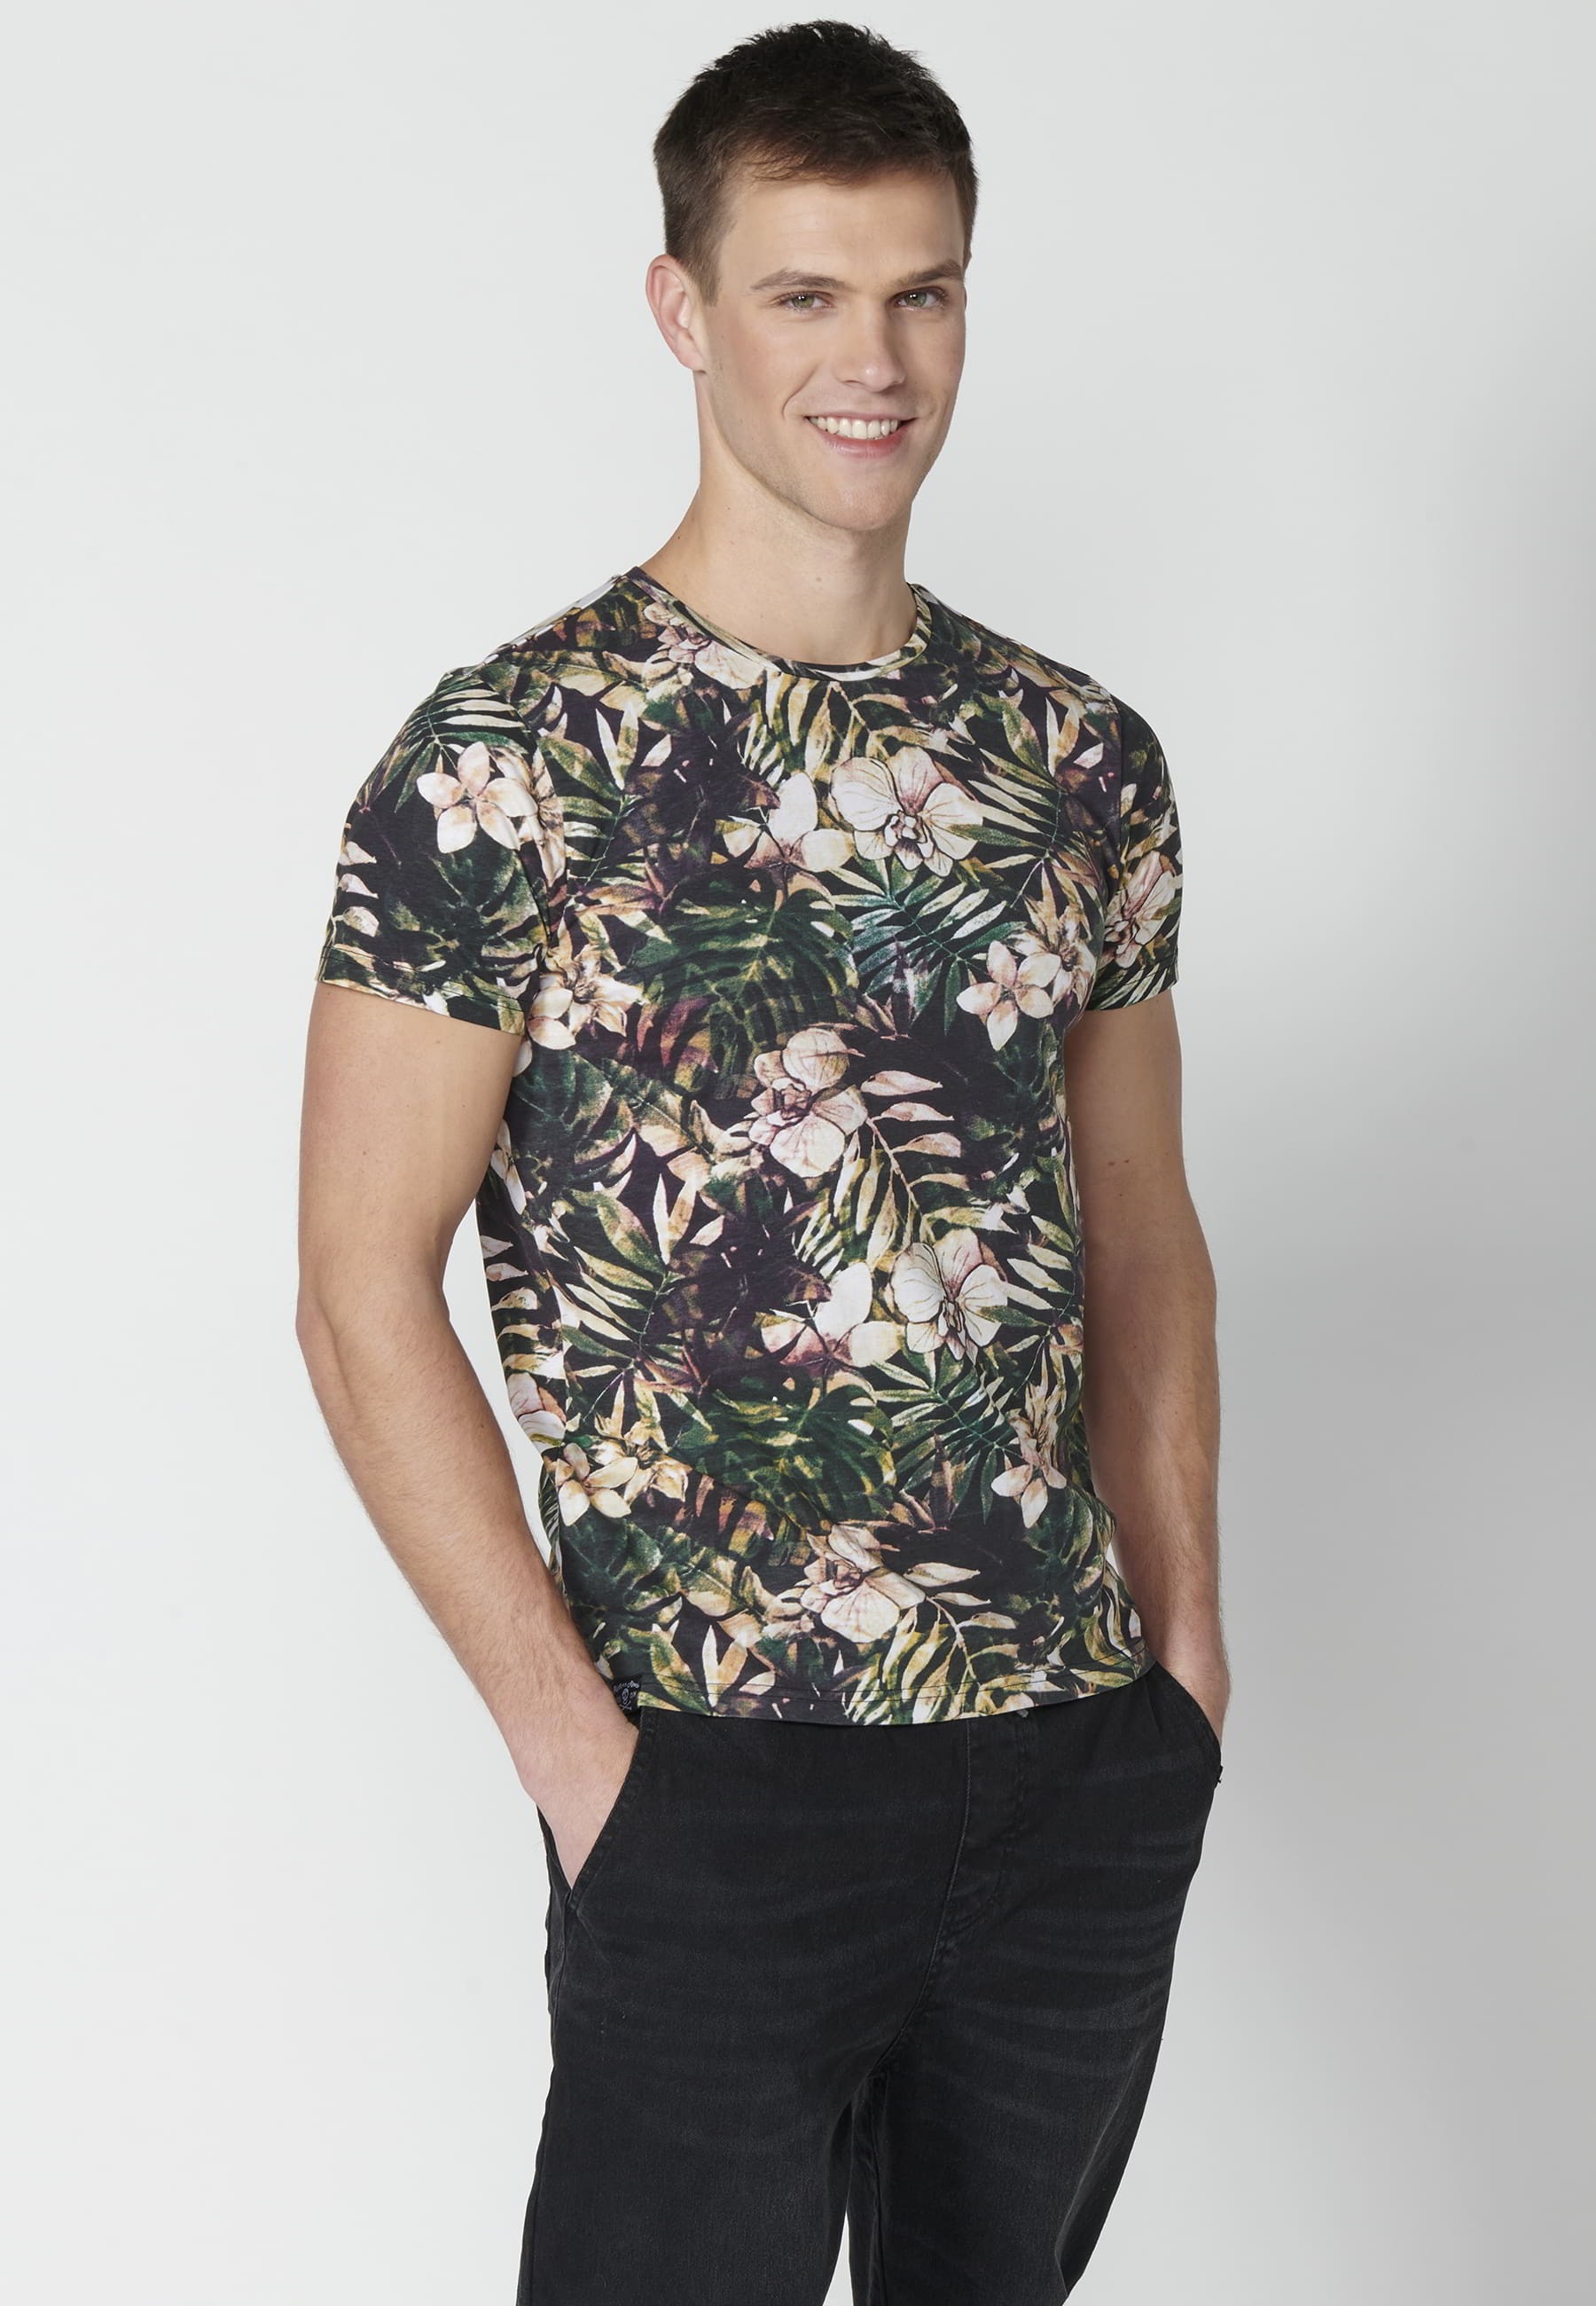 T-shirt Homme Multicolore Imprimé Tropical En Coton À Manches Courtes